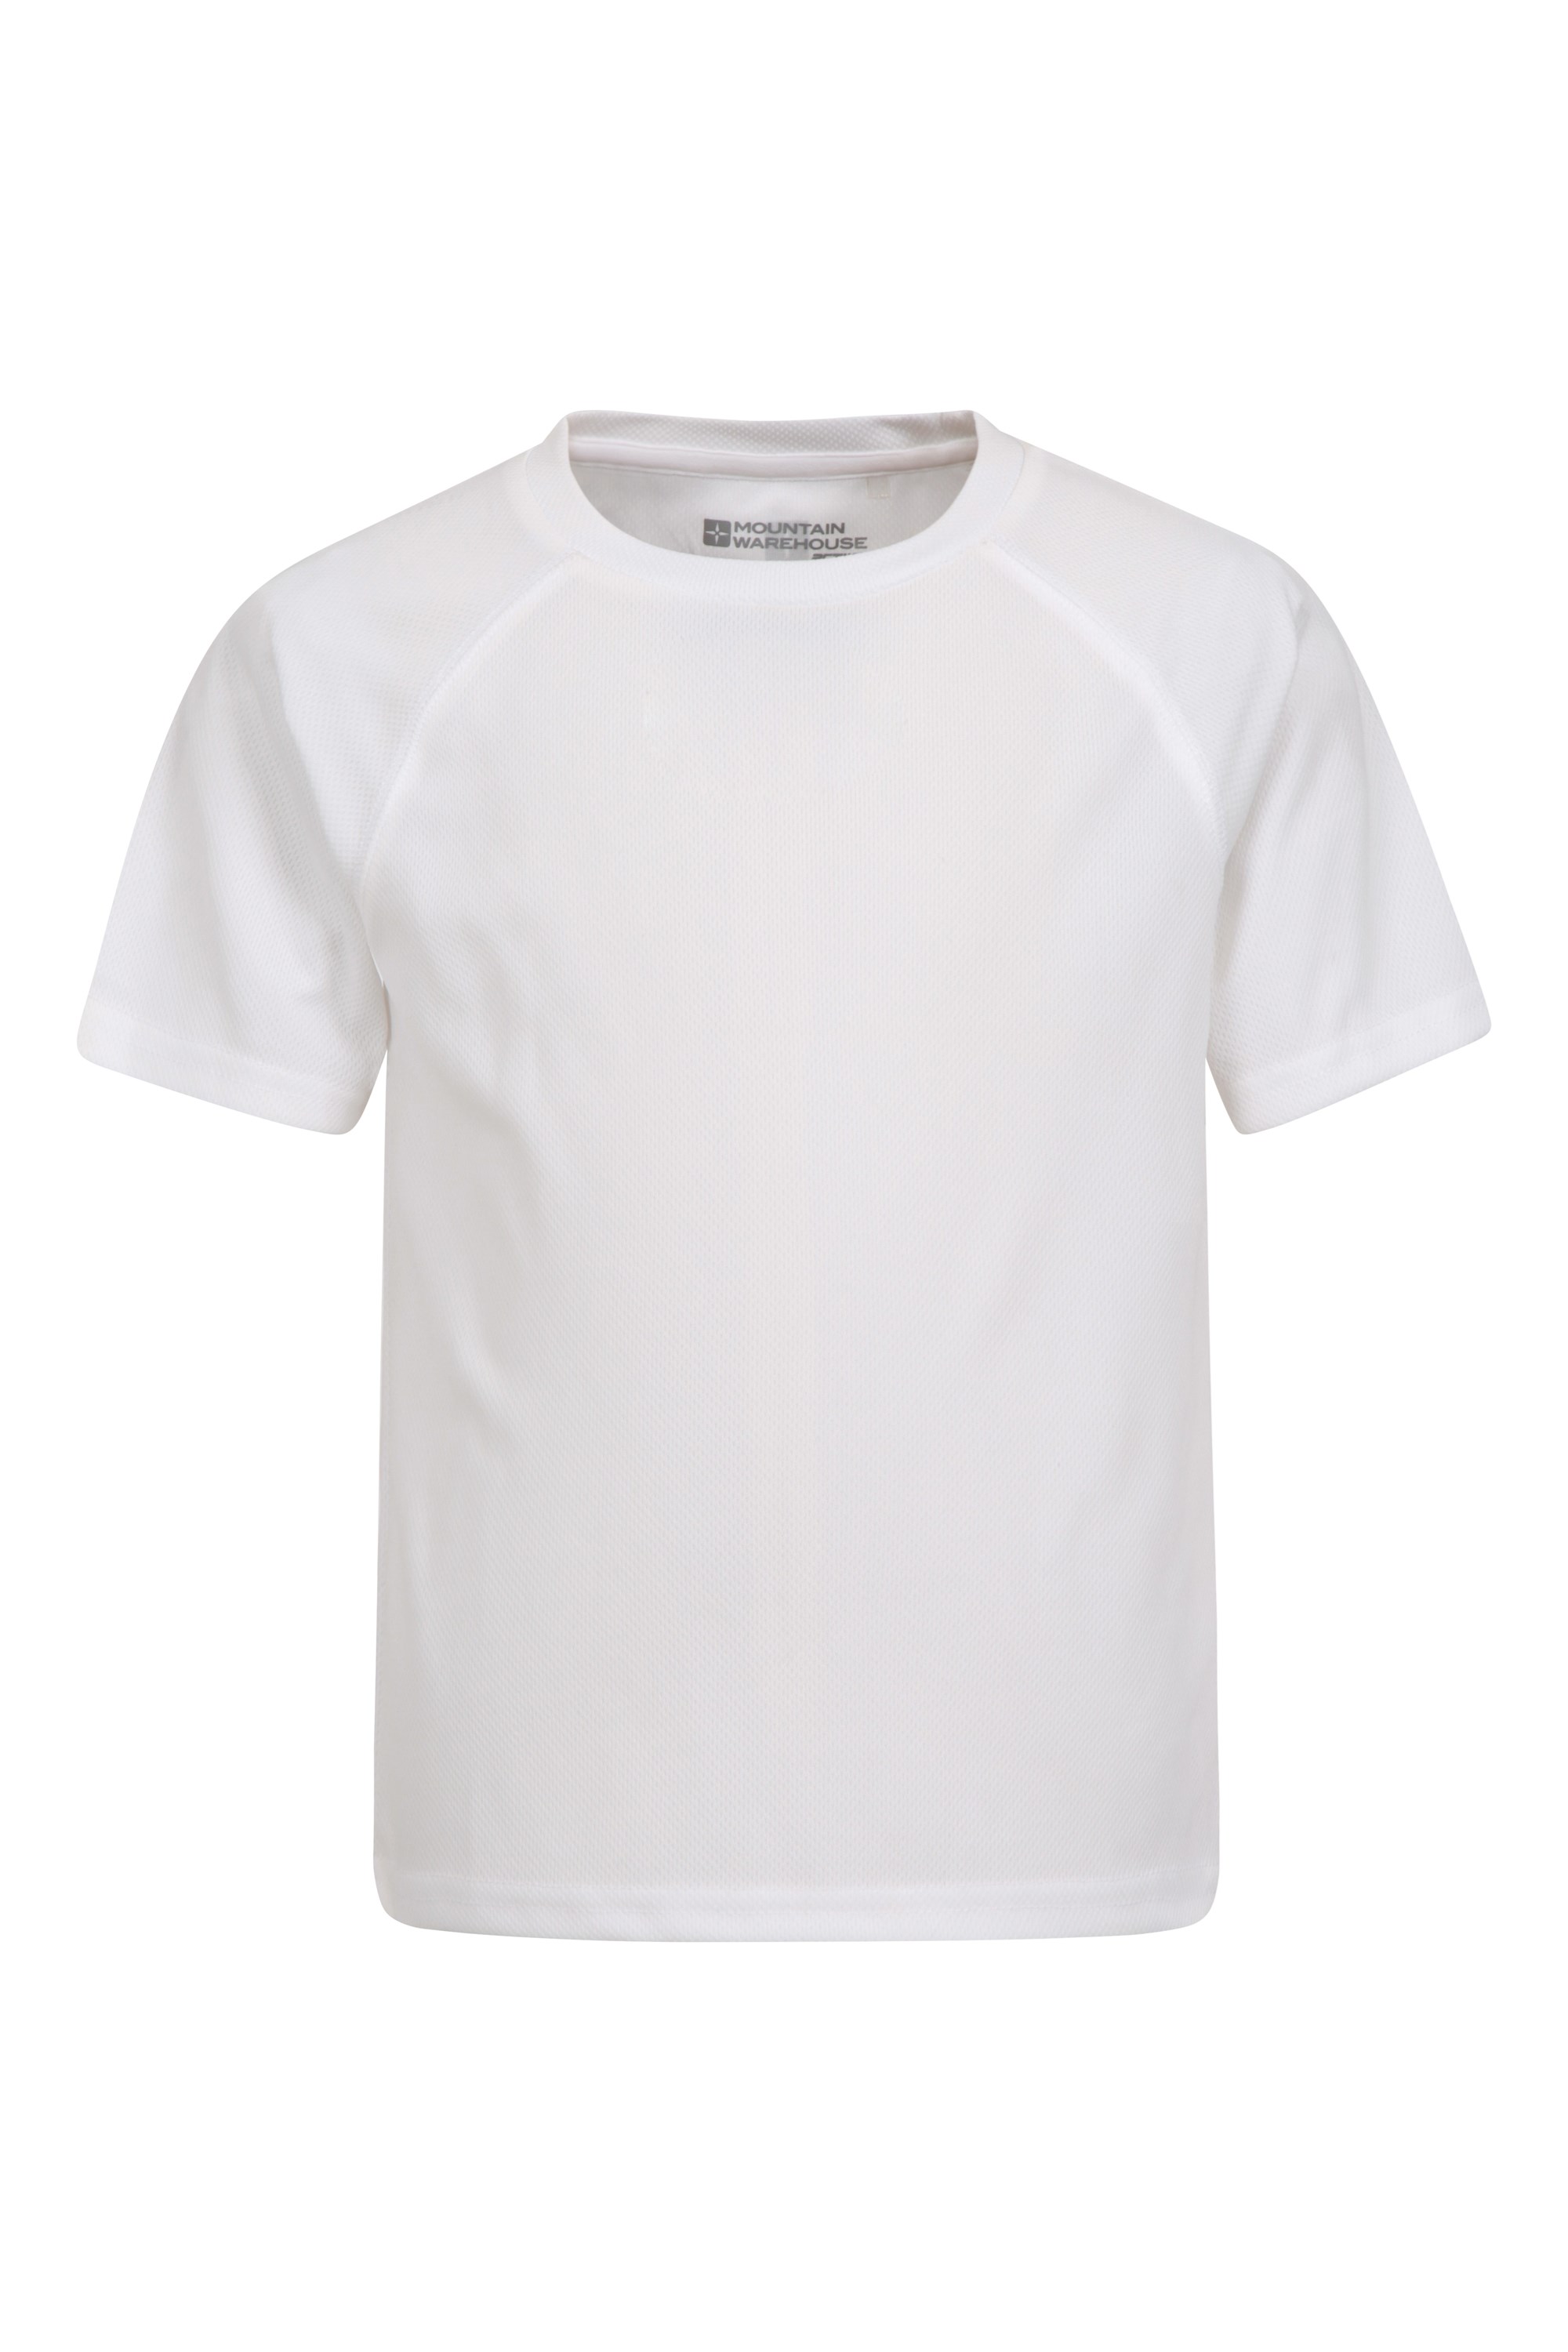 Endurance - koszulka dziecięca - White